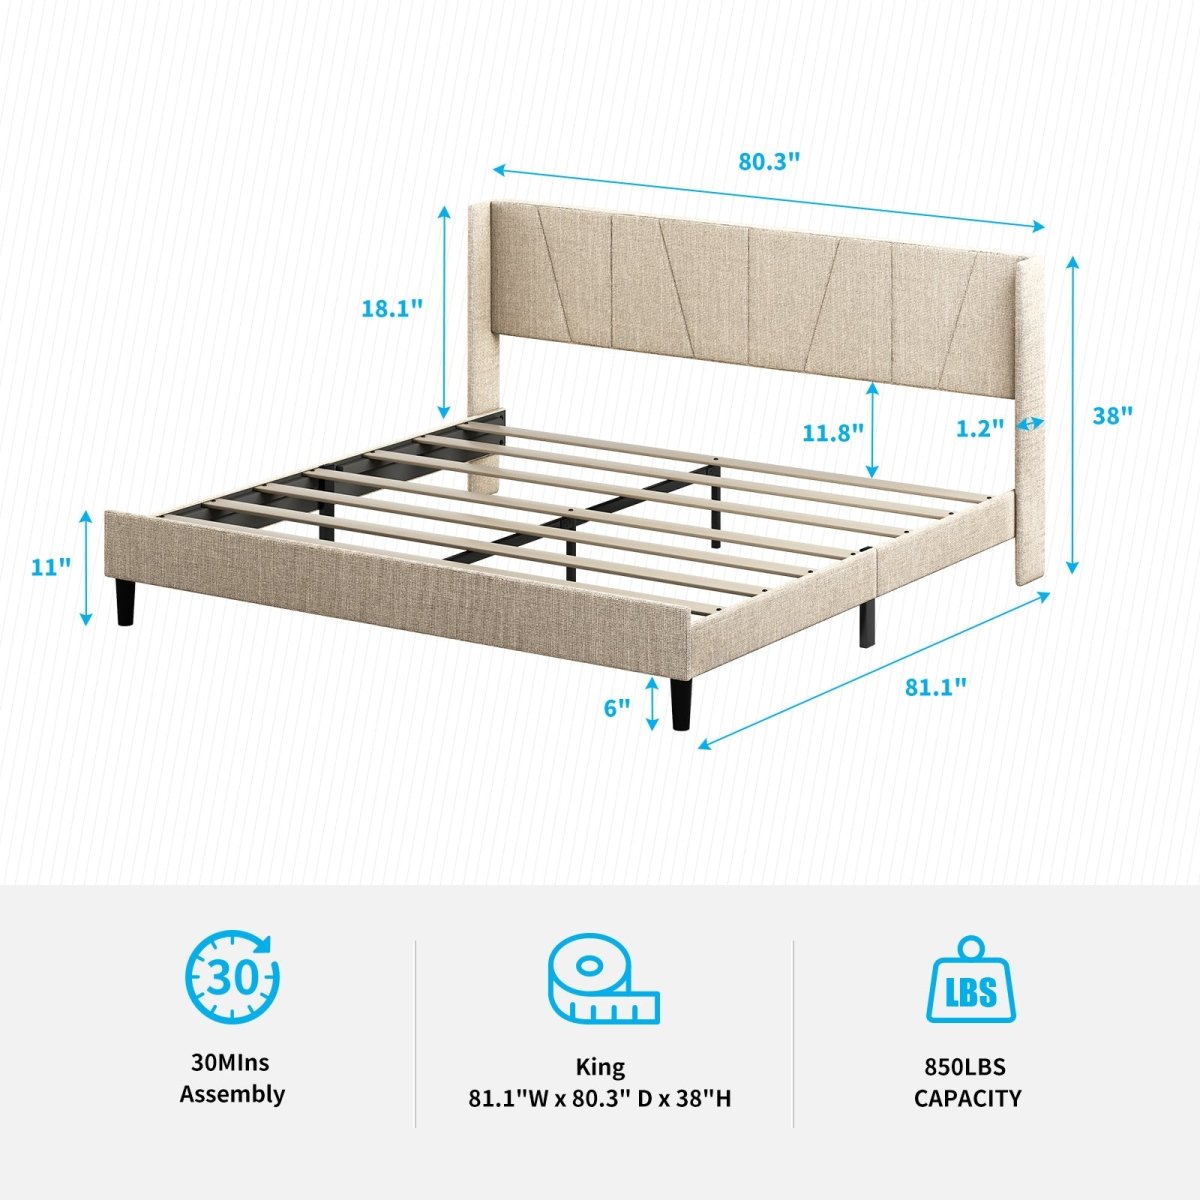 Upholstered Bed Frame | Modern Linen Wingback Platform Bed with Headboard and Wood Slat Support - Mjkonebed frame